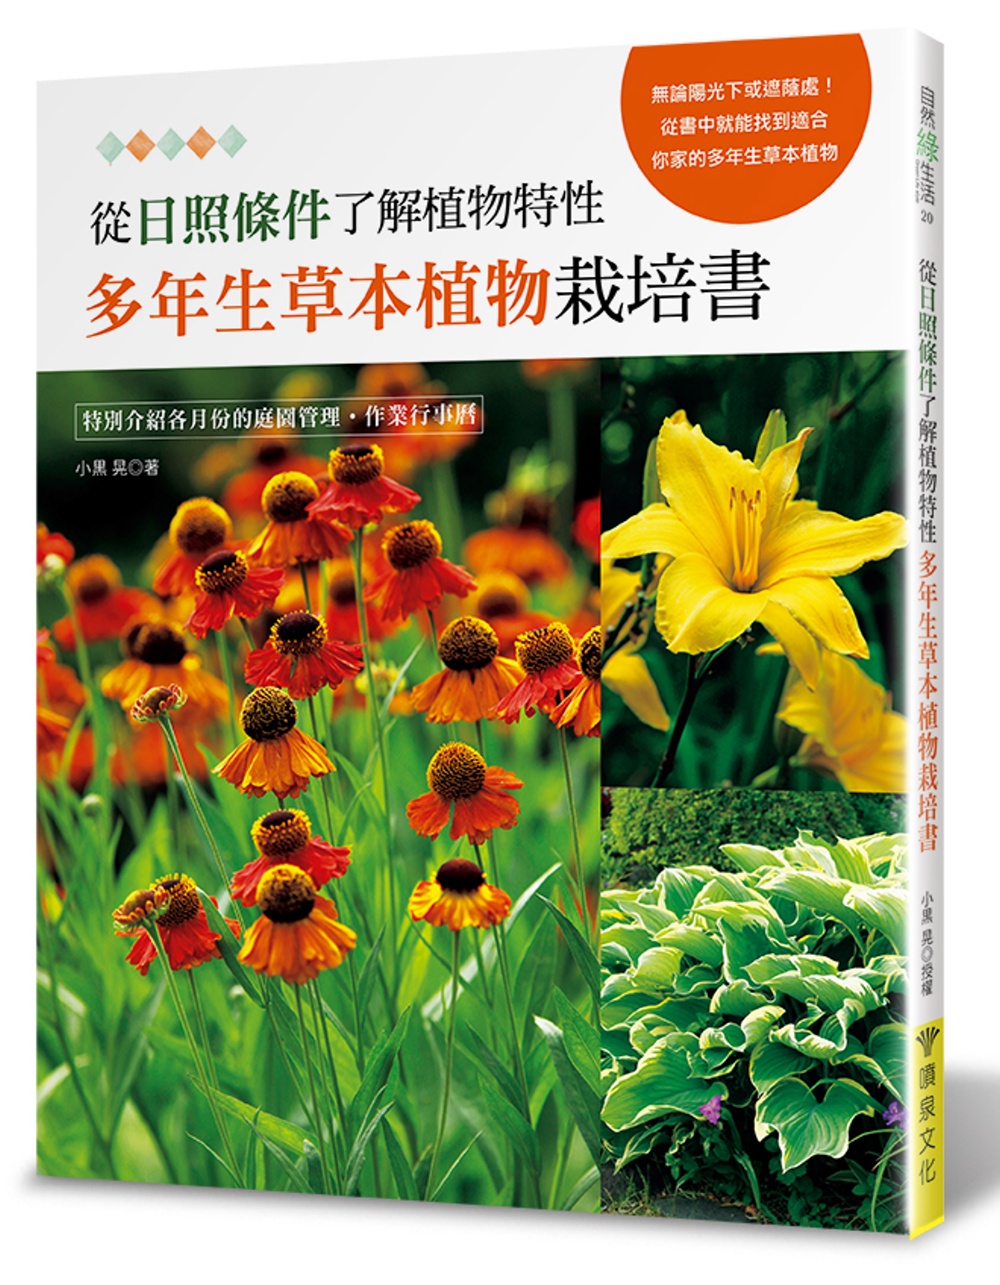 從日照條件了解植物特性：多年生草本植物栽培書